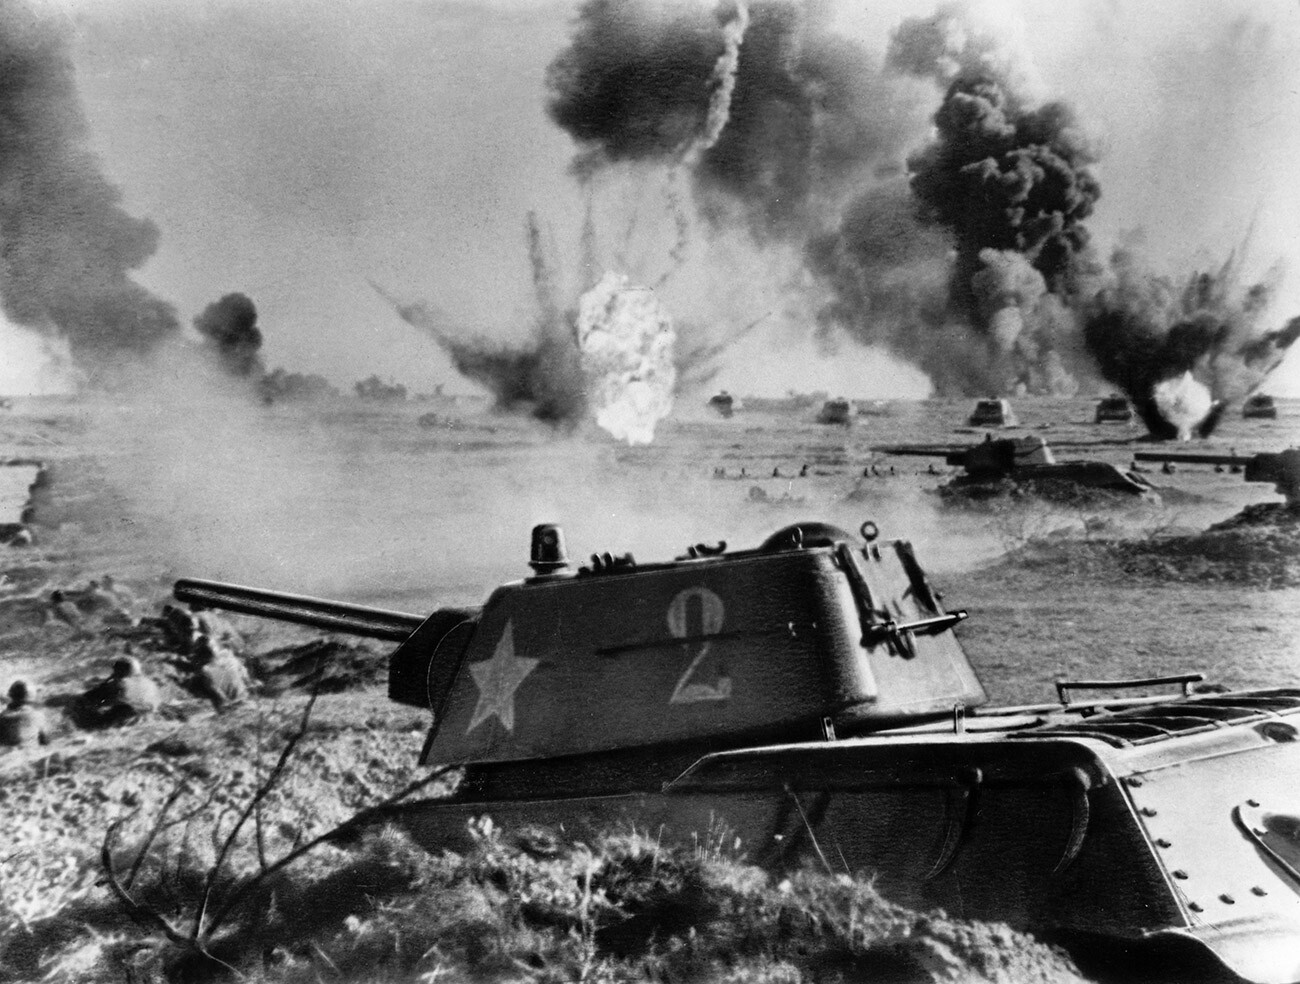 Bitka za Stalingrad, sovjetski tanki t-34 v boju, 1942 ali 1943 